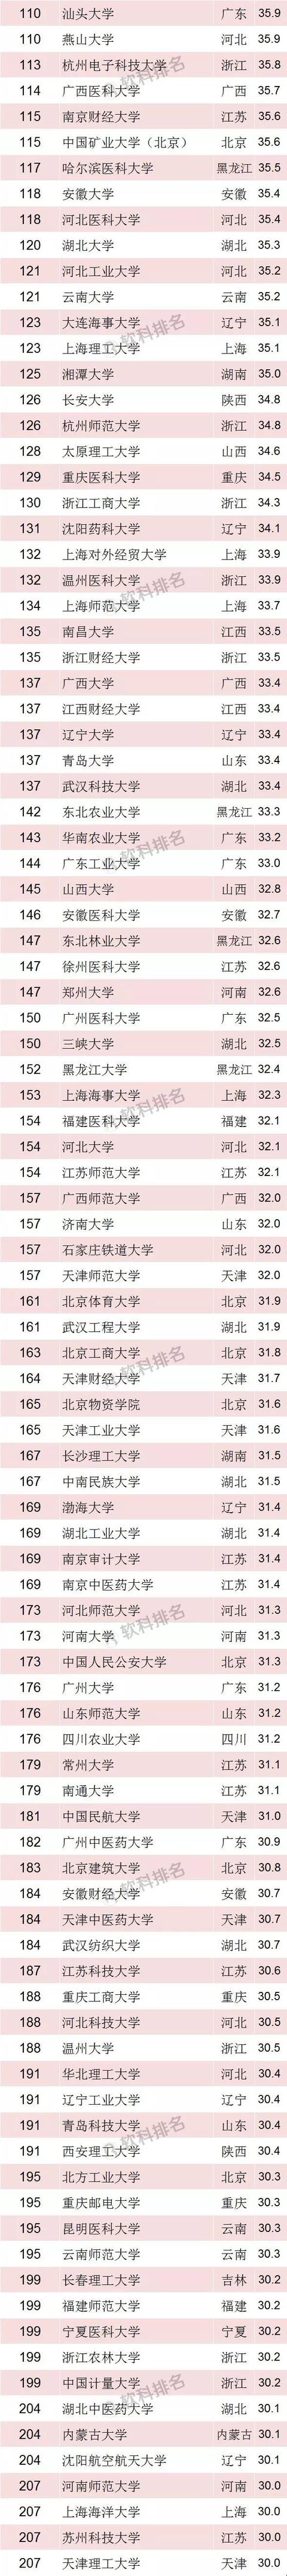 2018软科中国最好大学排名